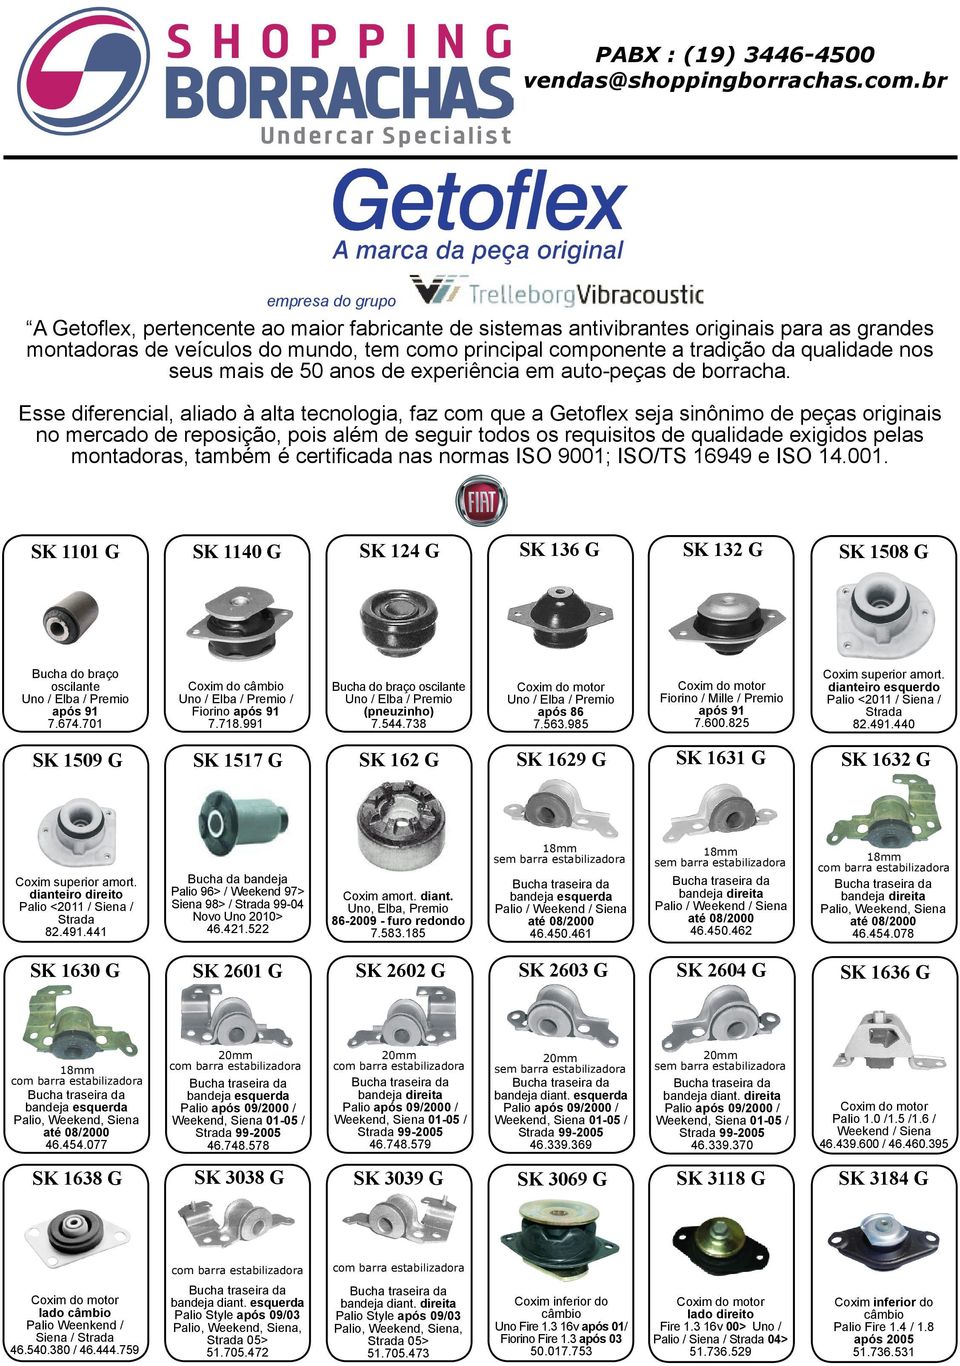 Esse diferencial, aliado à alta tecnologia, faz com que a Getoflex seja sinônimo de peças originais no mercado de reposição, pois além de seguir todos os requisitos de qualidade exigidos pelas